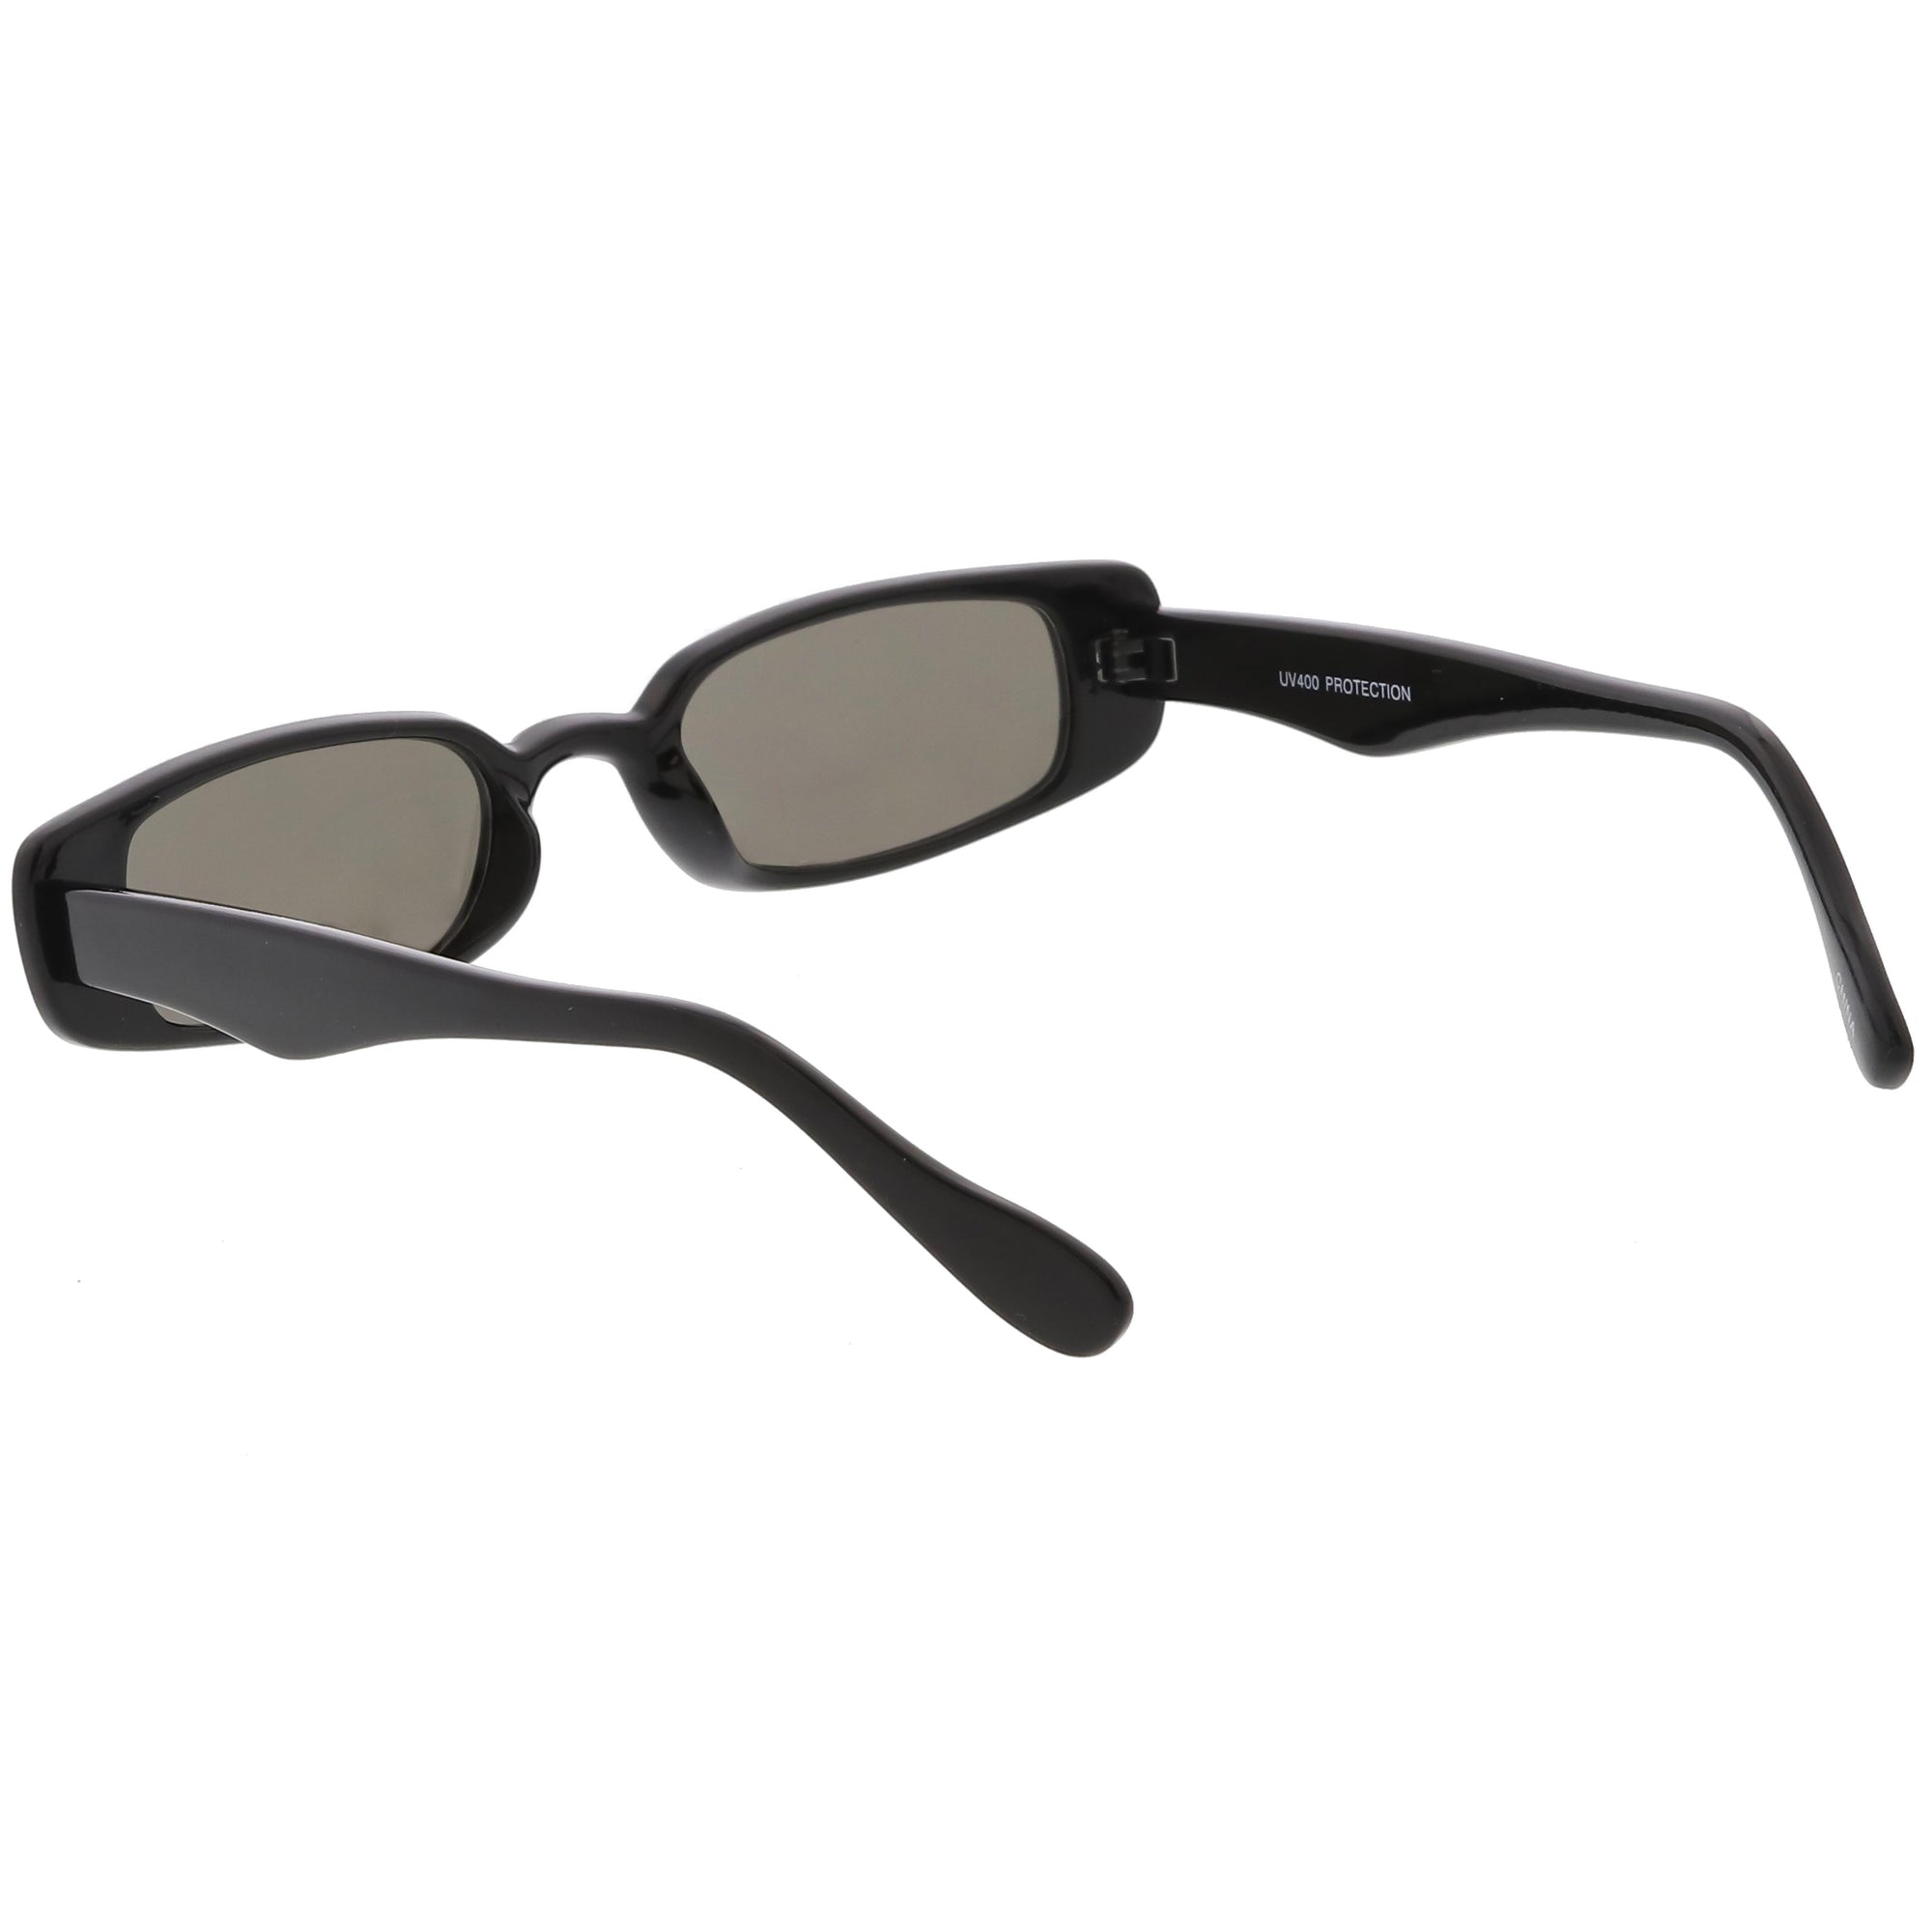 Retro 1990's Thin Rectangular Mirrored Lens Sunglasses - zeroUV